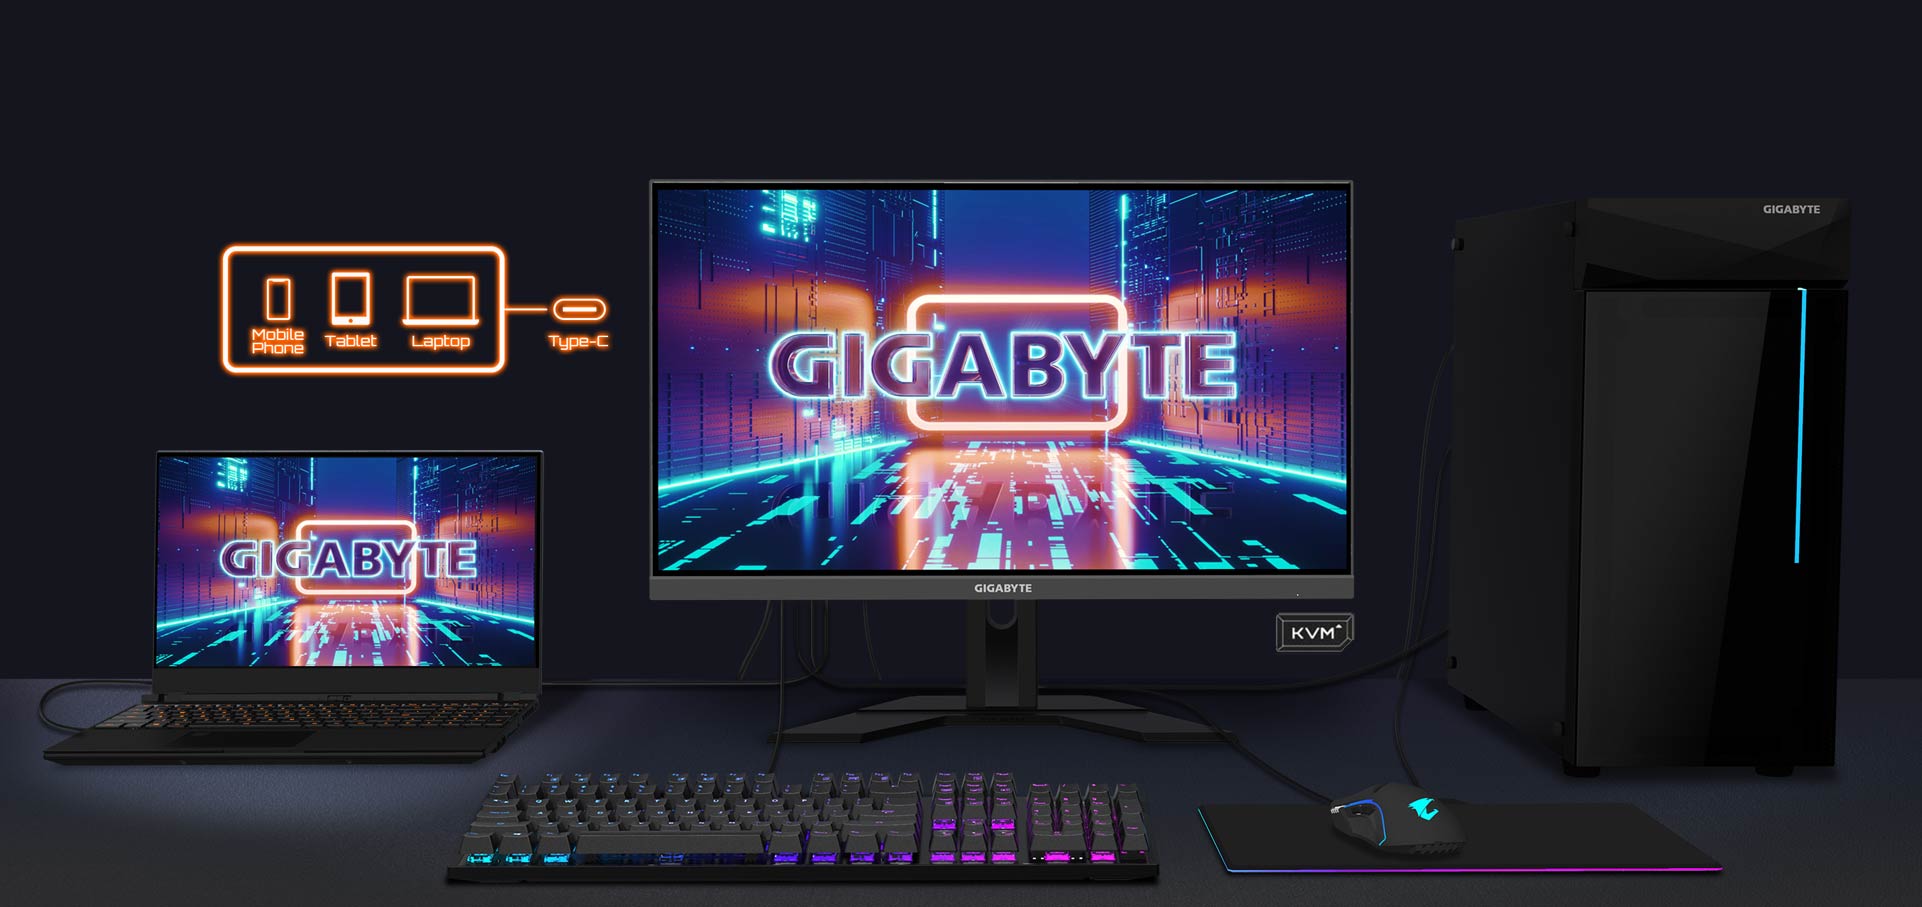 gigabyte m27F 27 inch gaming monitor sri lanka News